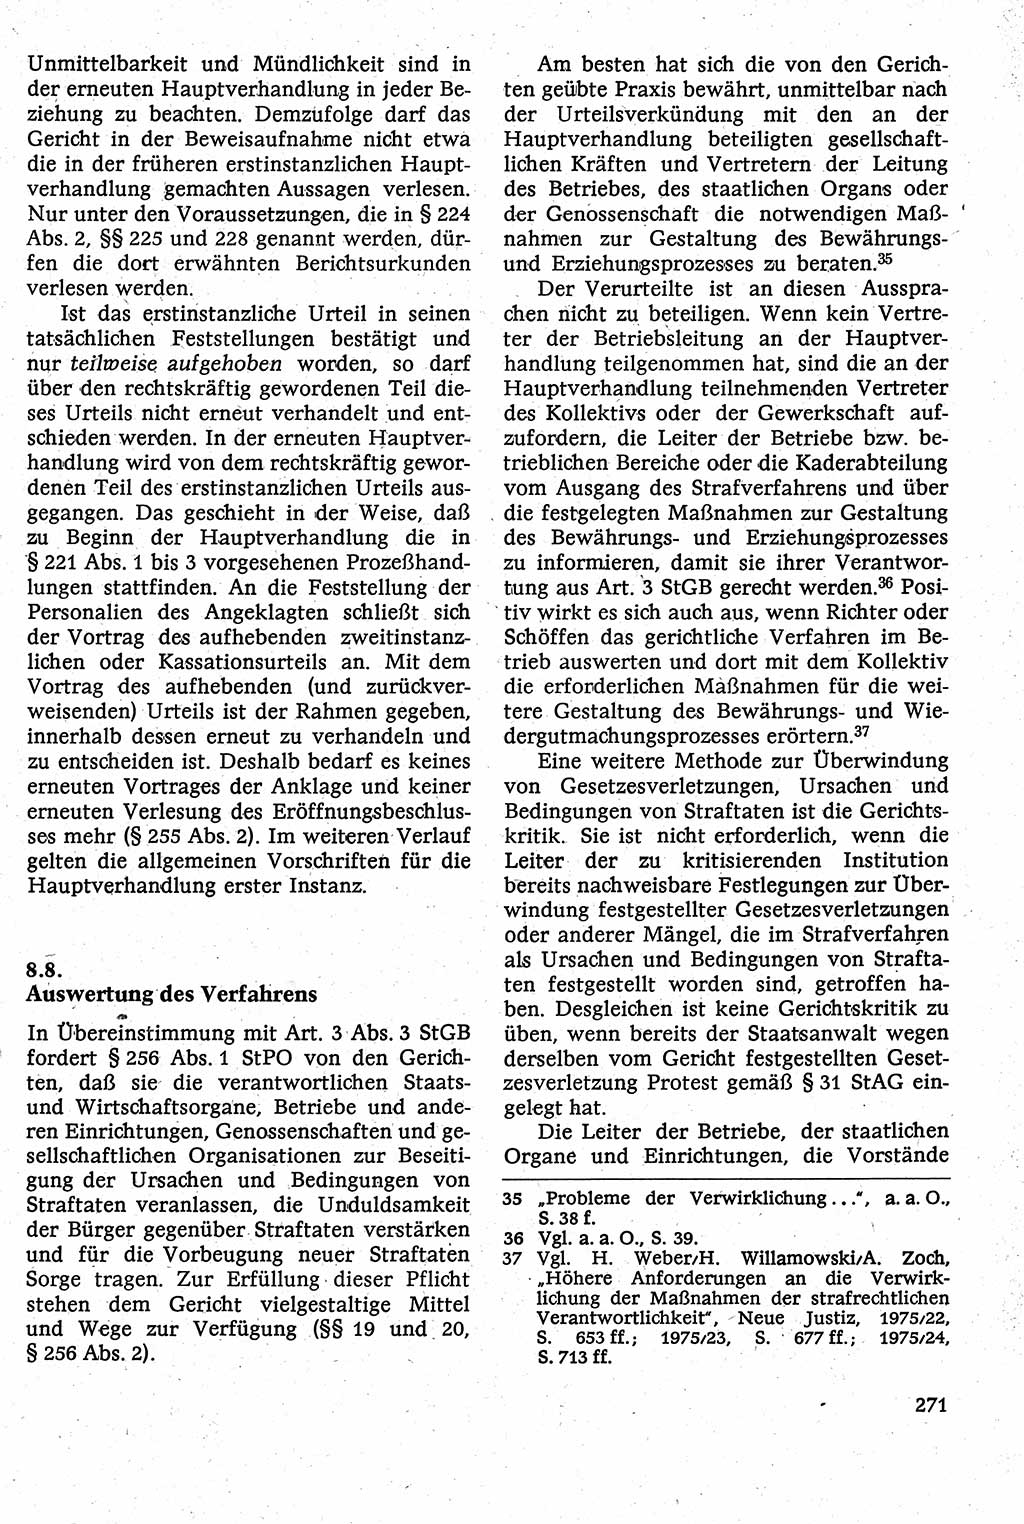 Strafverfahrensrecht [Deutsche Demokratische Republik (DDR)], Lehrbuch 1982, Seite 271 (Strafverf.-R. DDR Lb. 1982, S. 271)